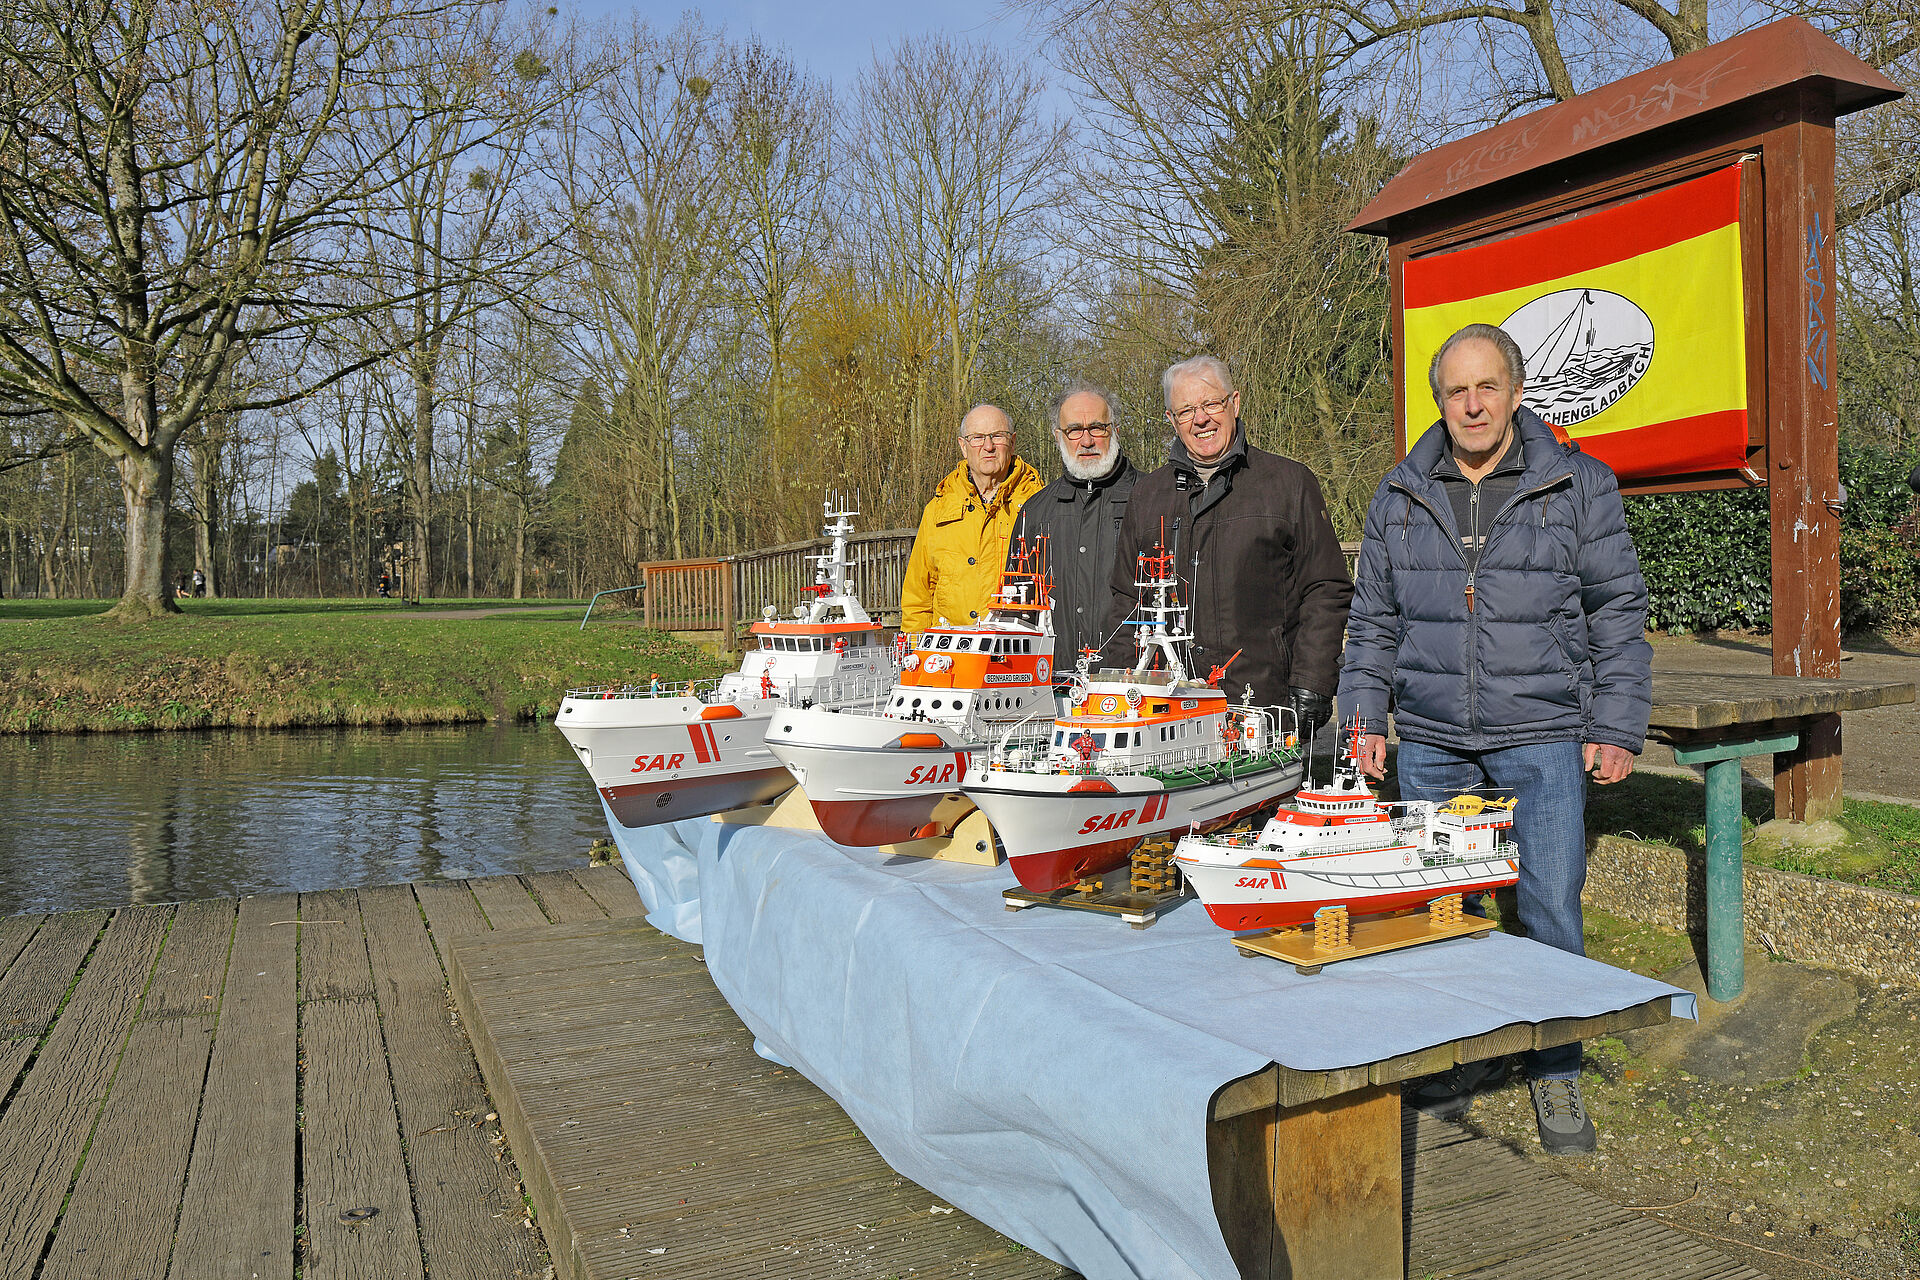 Spende Schiffsmodellbauclub Mönchengladbach an die Seenotretter